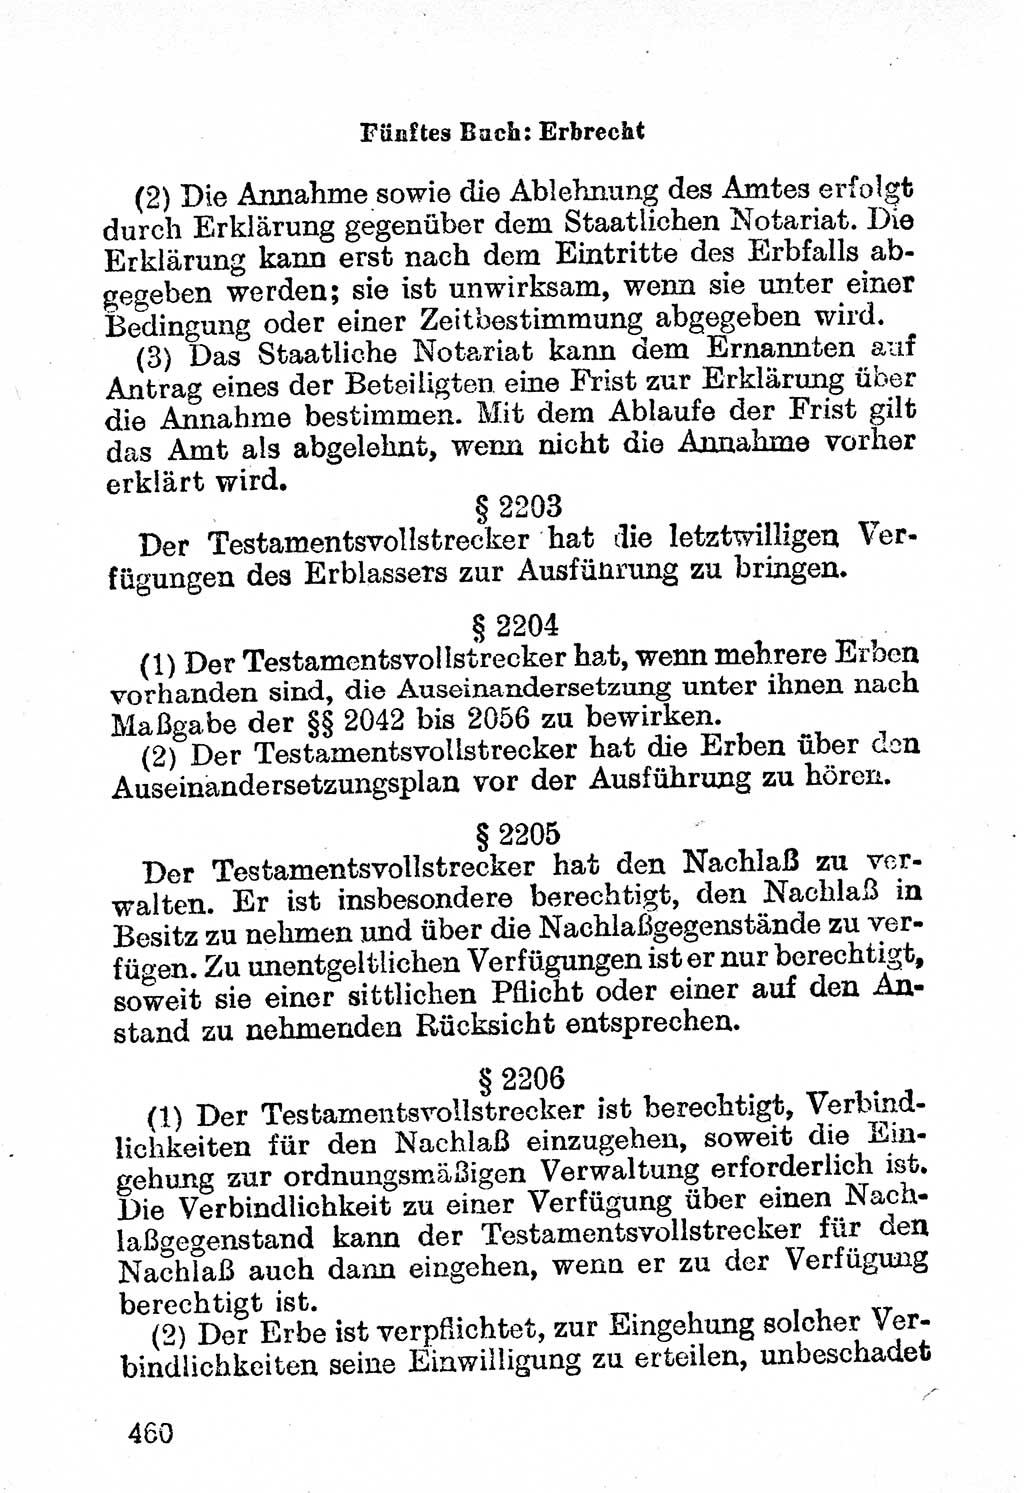 Bürgerliches Gesetzbuch (BGB) nebst wichtigen Nebengesetzen [Deutsche Demokratische Republik (DDR)] 1956, Seite 460 (BGB Nebenges. DDR 1956, S. 460)